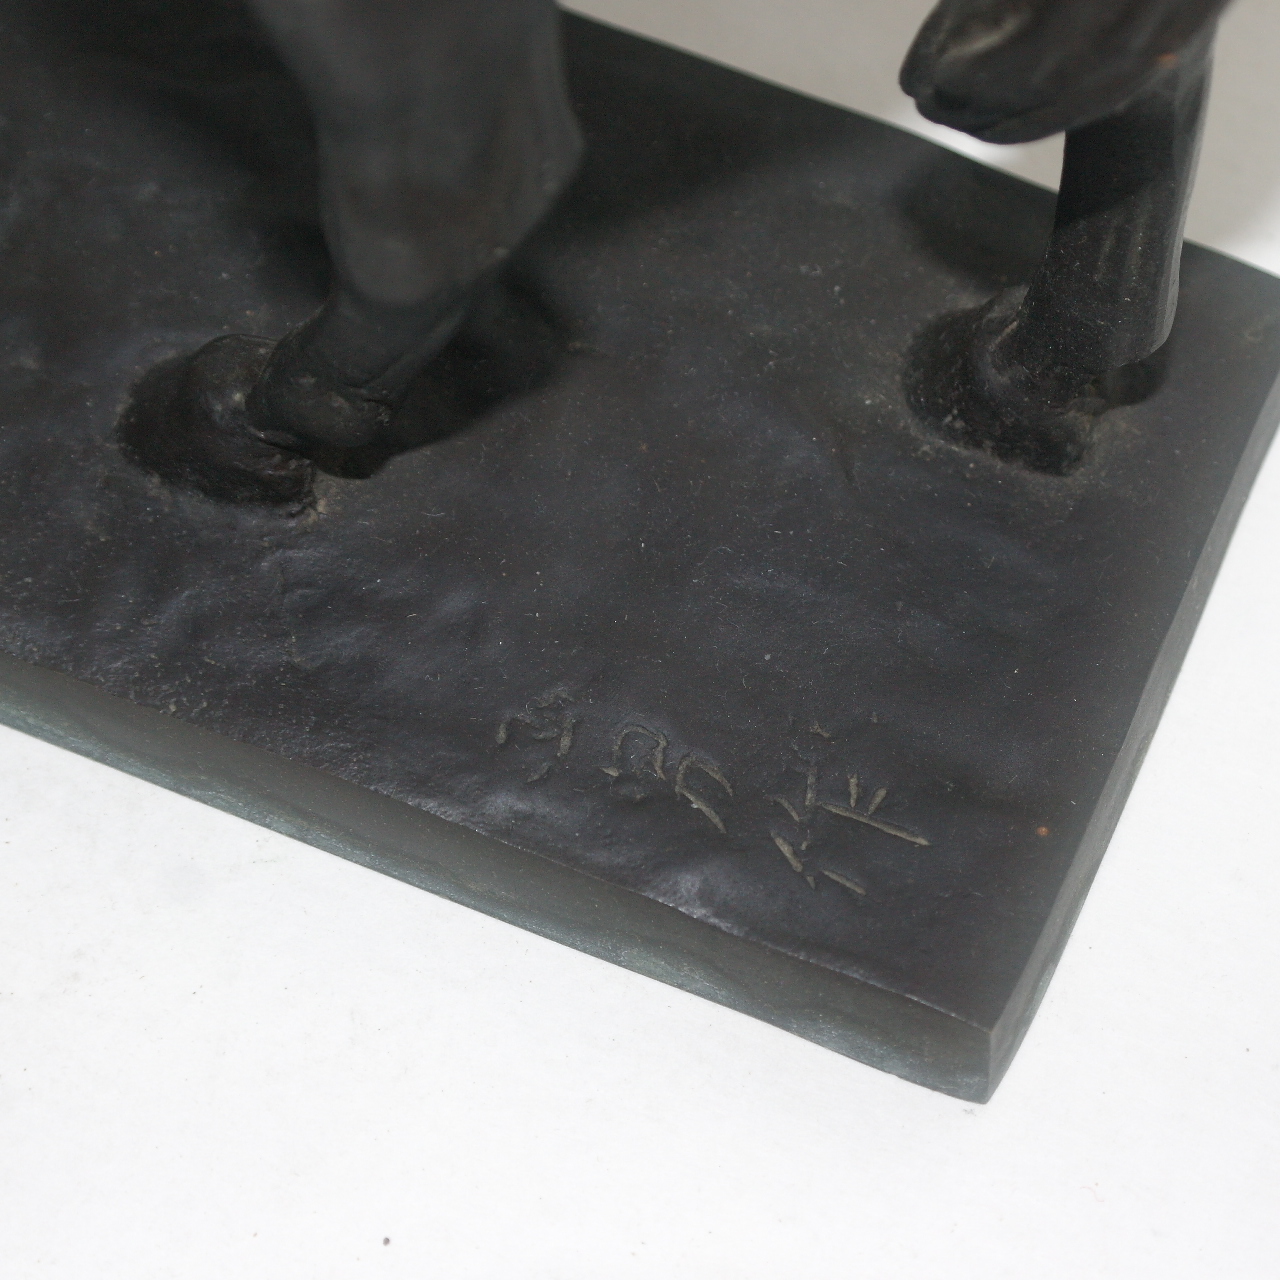 작가의 수결이 있는 청동브론즈 말 조각상